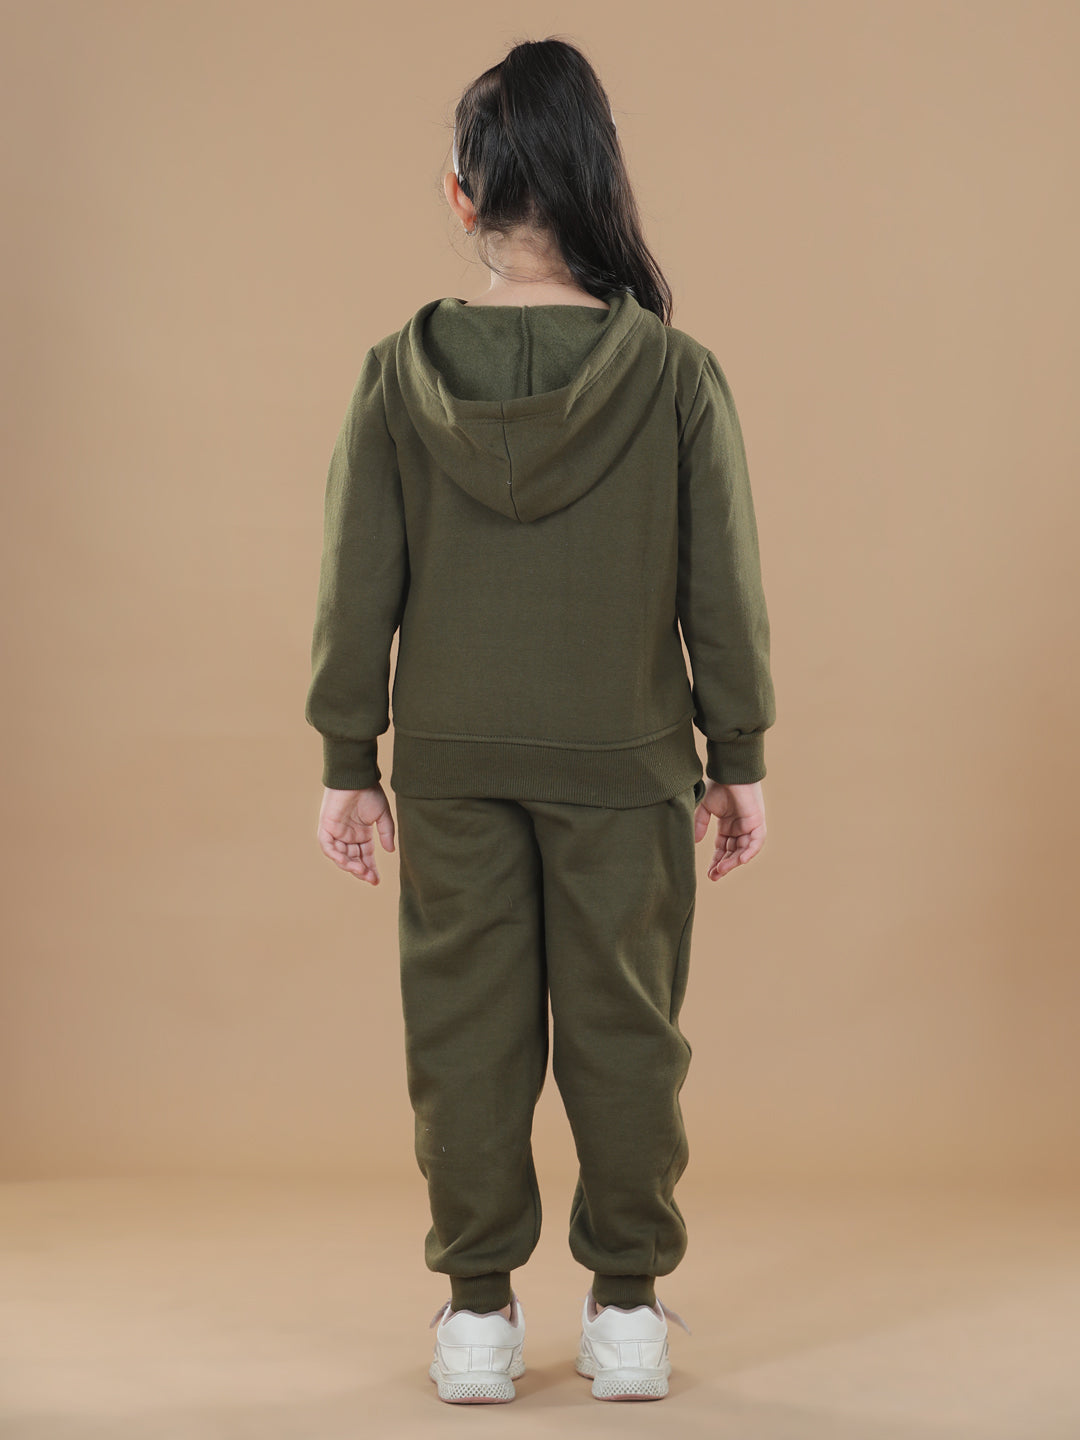 Girls Olive Zebra Printed Hooded Track Suit Set